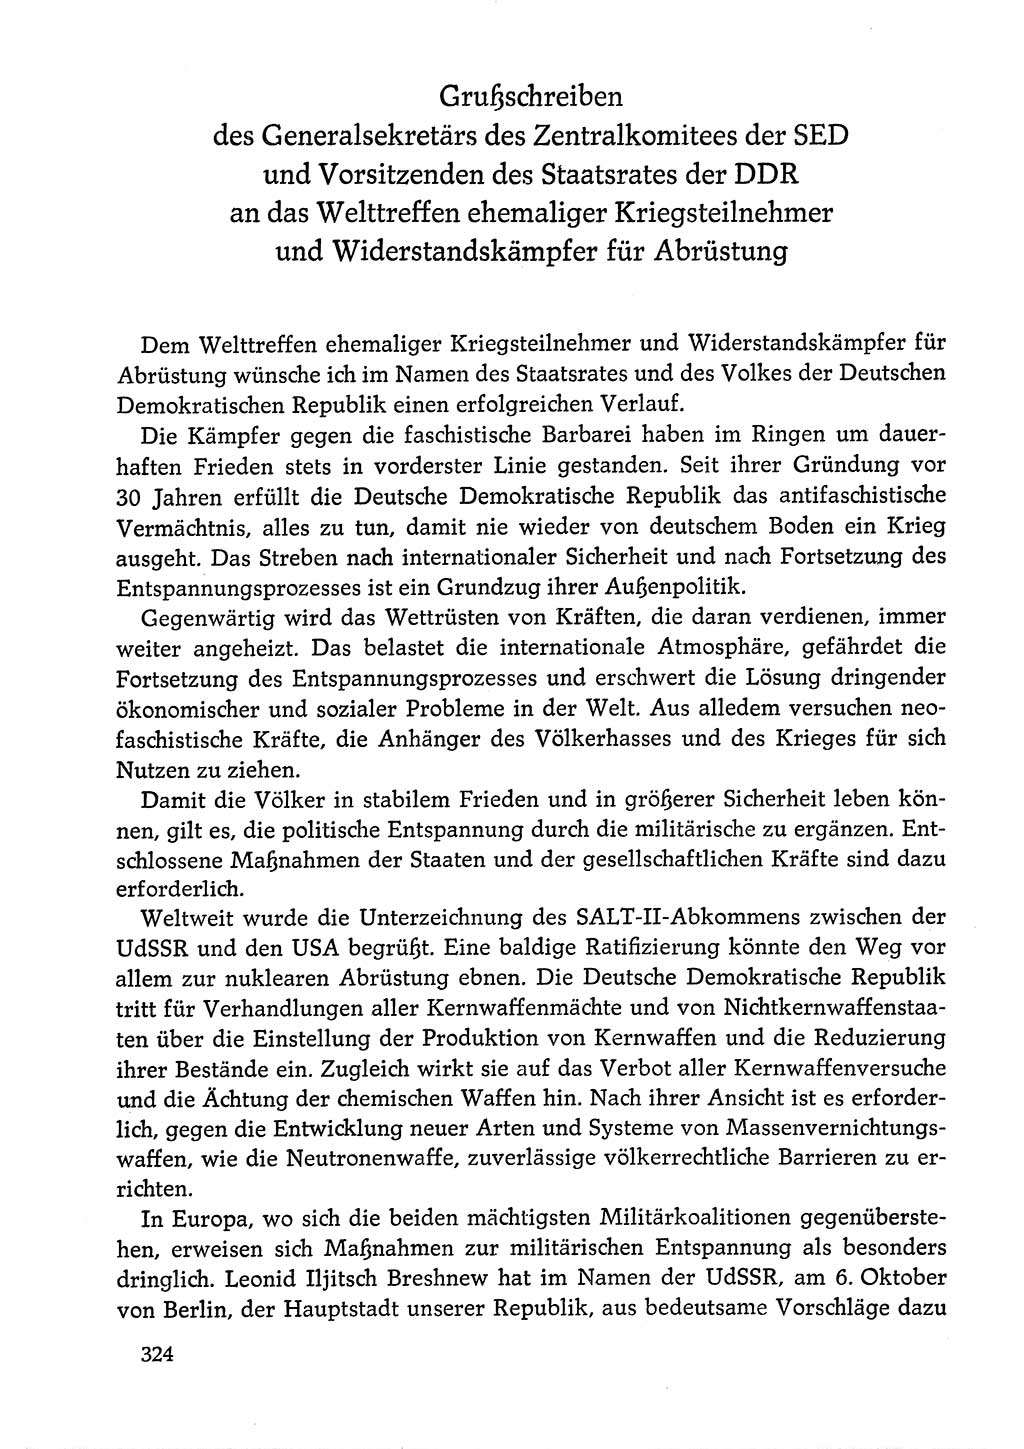 Dokumente der Sozialistischen Einheitspartei Deutschlands (SED) [Deutsche Demokratische Republik (DDR)] 1978-1979, Seite 324 (Dok. SED DDR 1978-1979, S. 324)